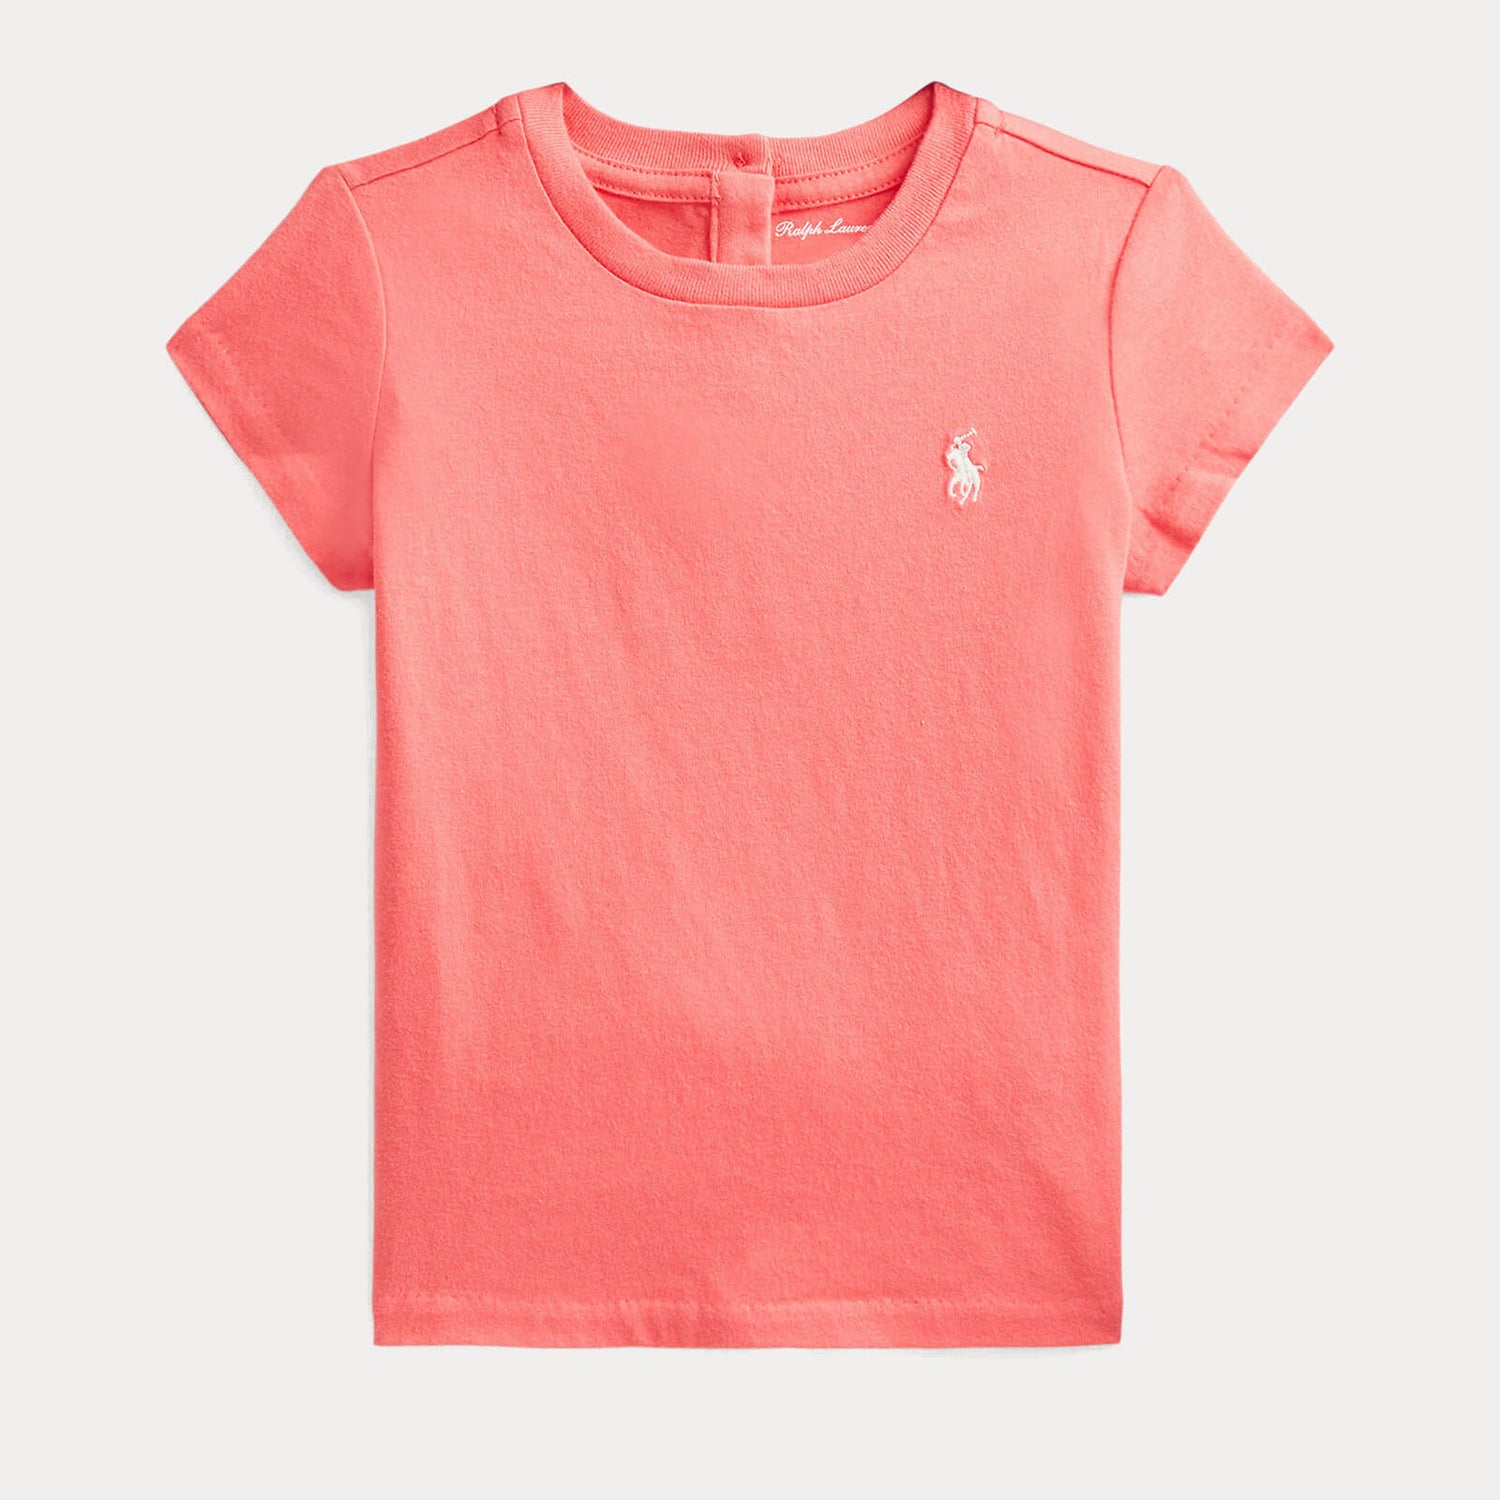 Polo Ralph Lauren Babys' Small Logo T-Shirt - Amalfi Red - 6-9 months